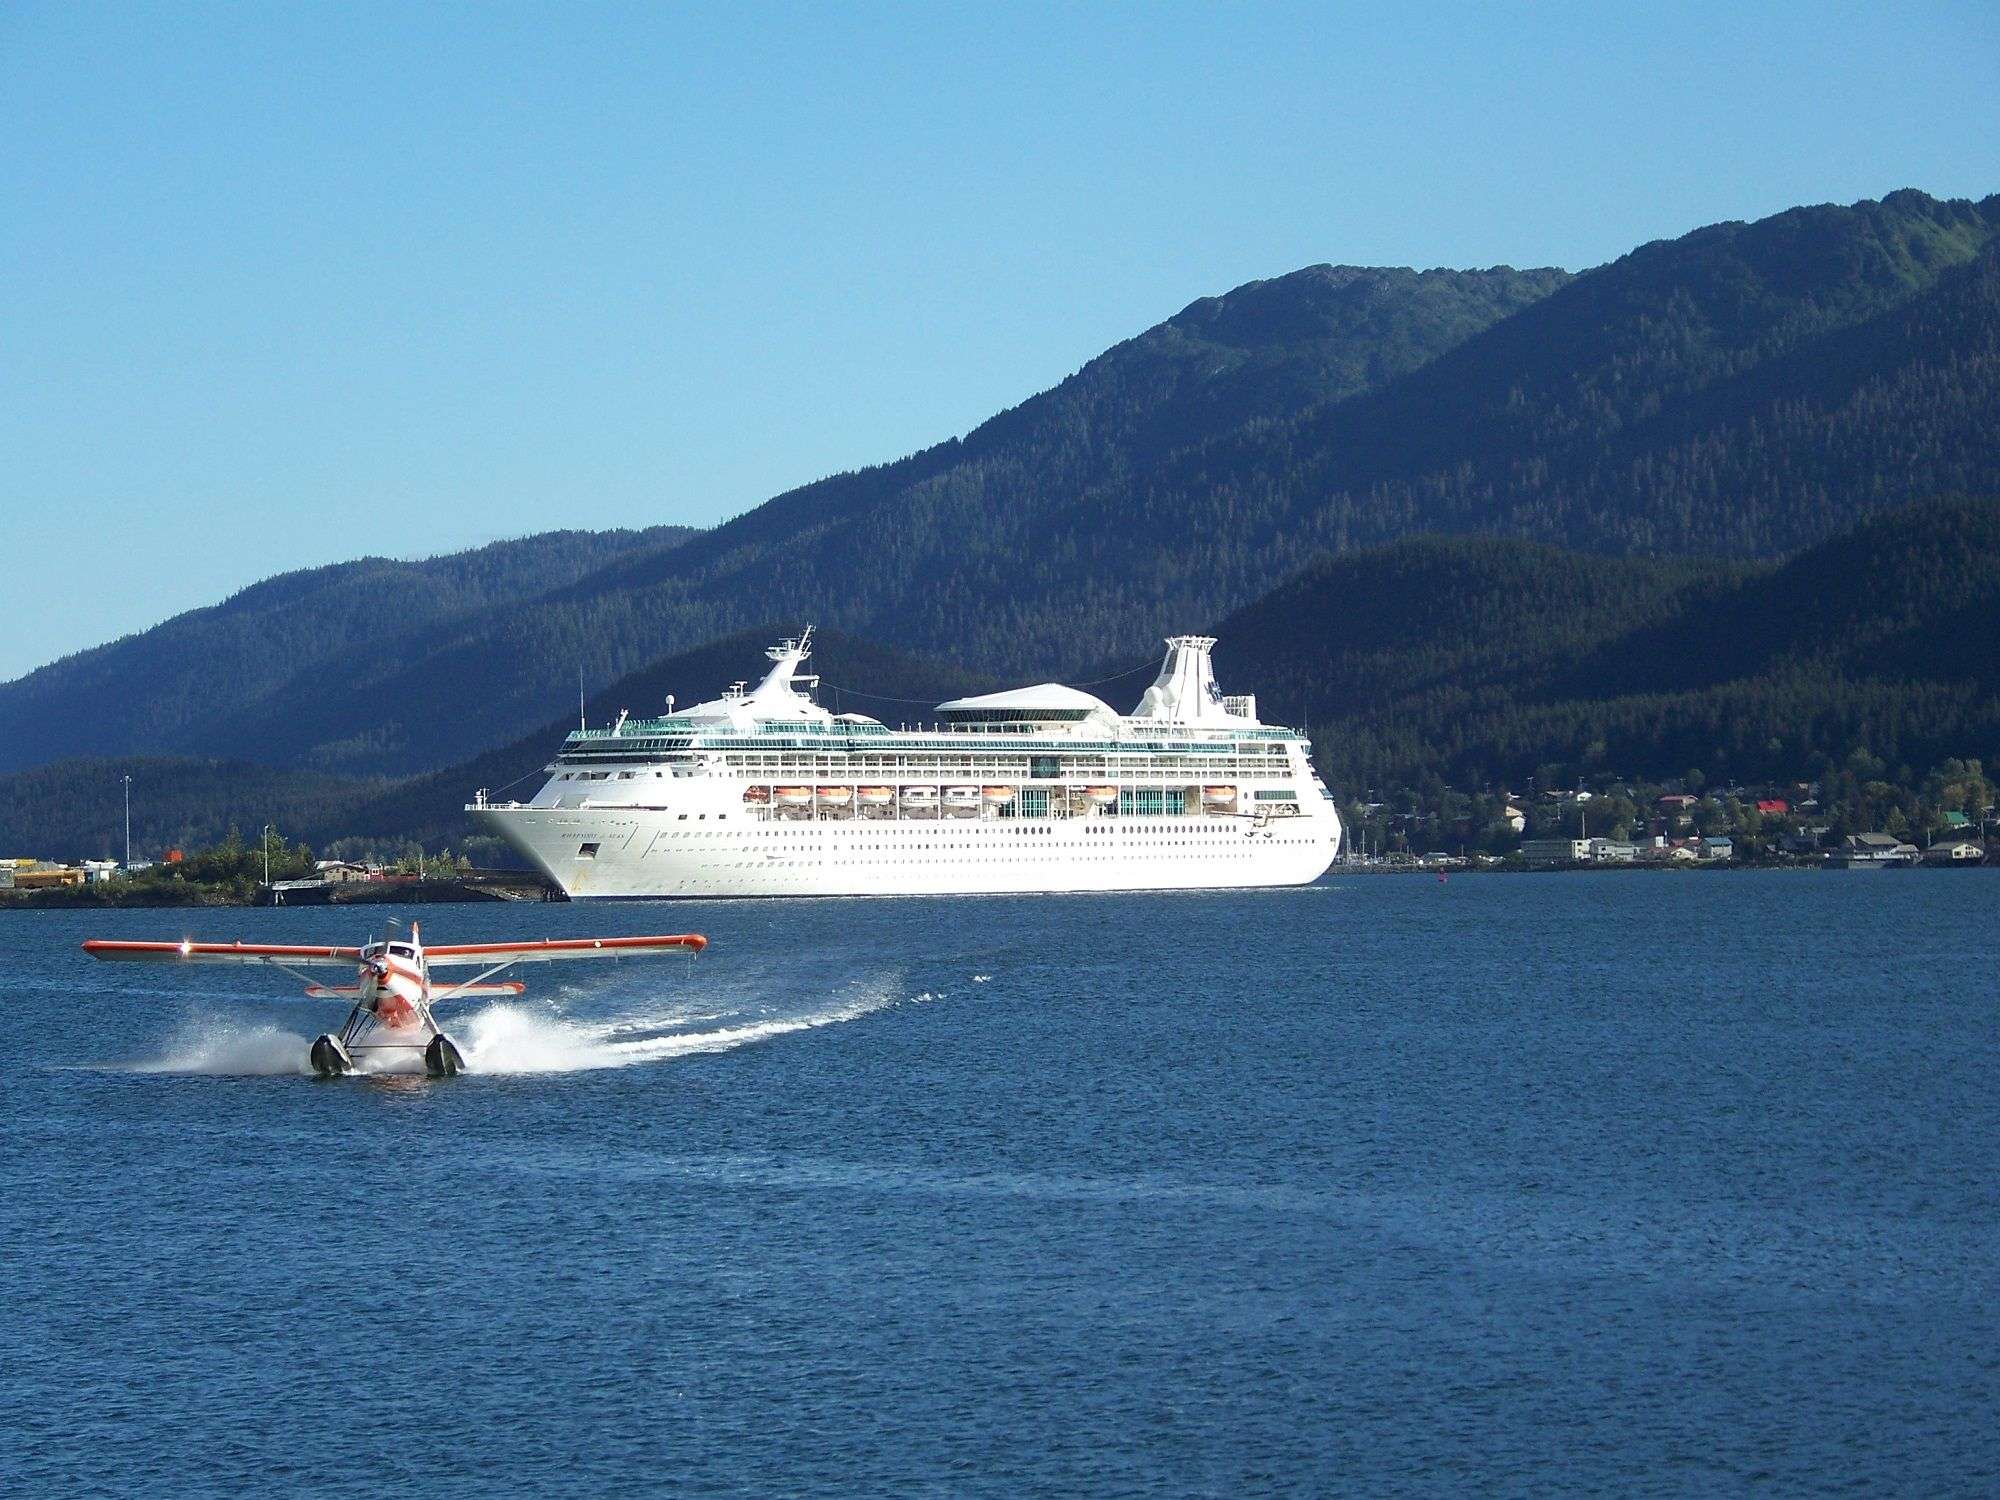 Royal Caribbean in port at Juneau